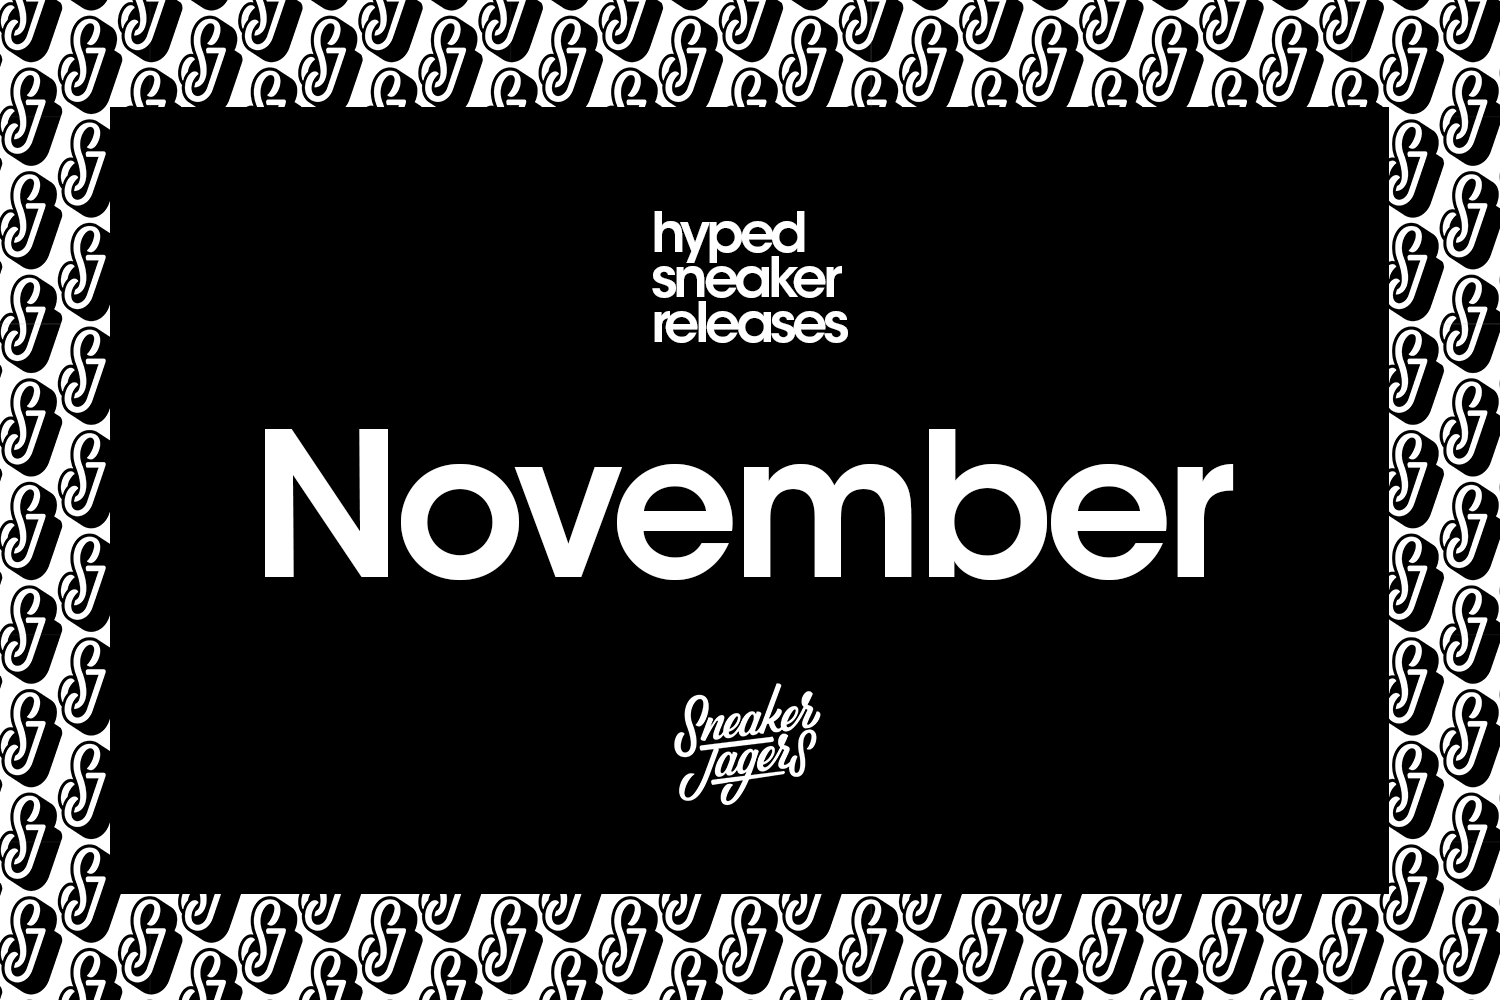 Hyped Sneaker Releases van november 2021